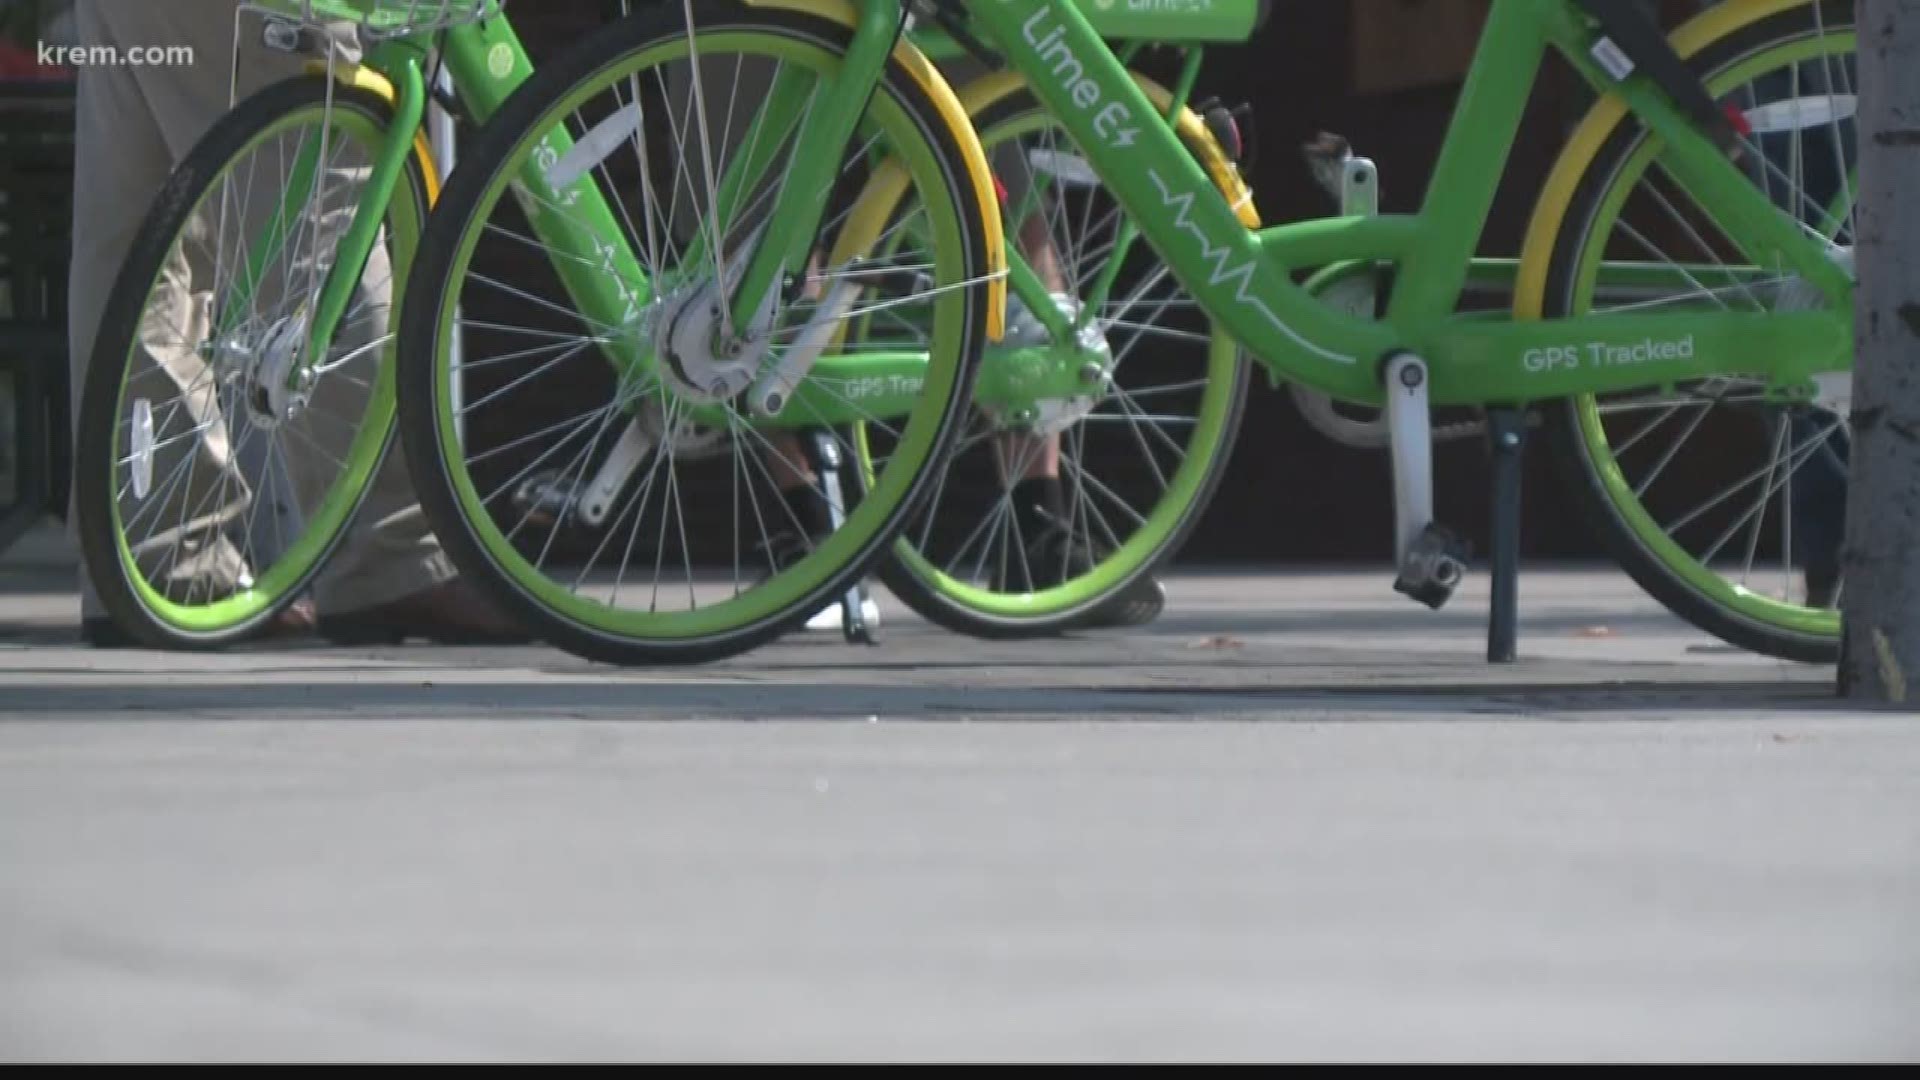 Lime bikes make their debut in Spokane for pilot program